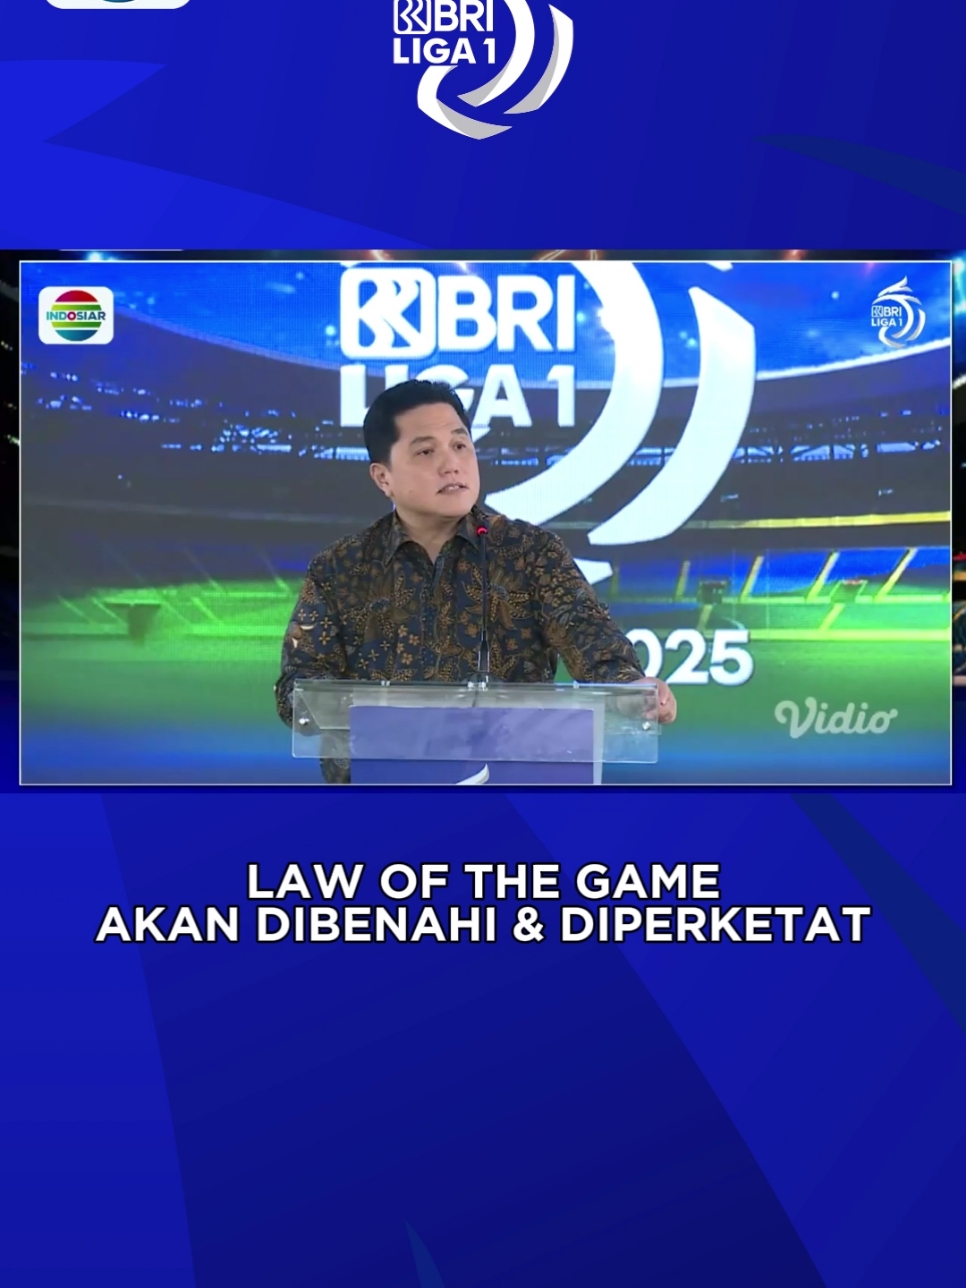 Mulai musim baru, Law of The Game akan dibenahi dan diperketat dan hanya kapten yang bisa berkomunikasi dengan wasit. #IndosiarRumahSepakBolaIndonesia  #BRILiga1  #IndosiarSports 